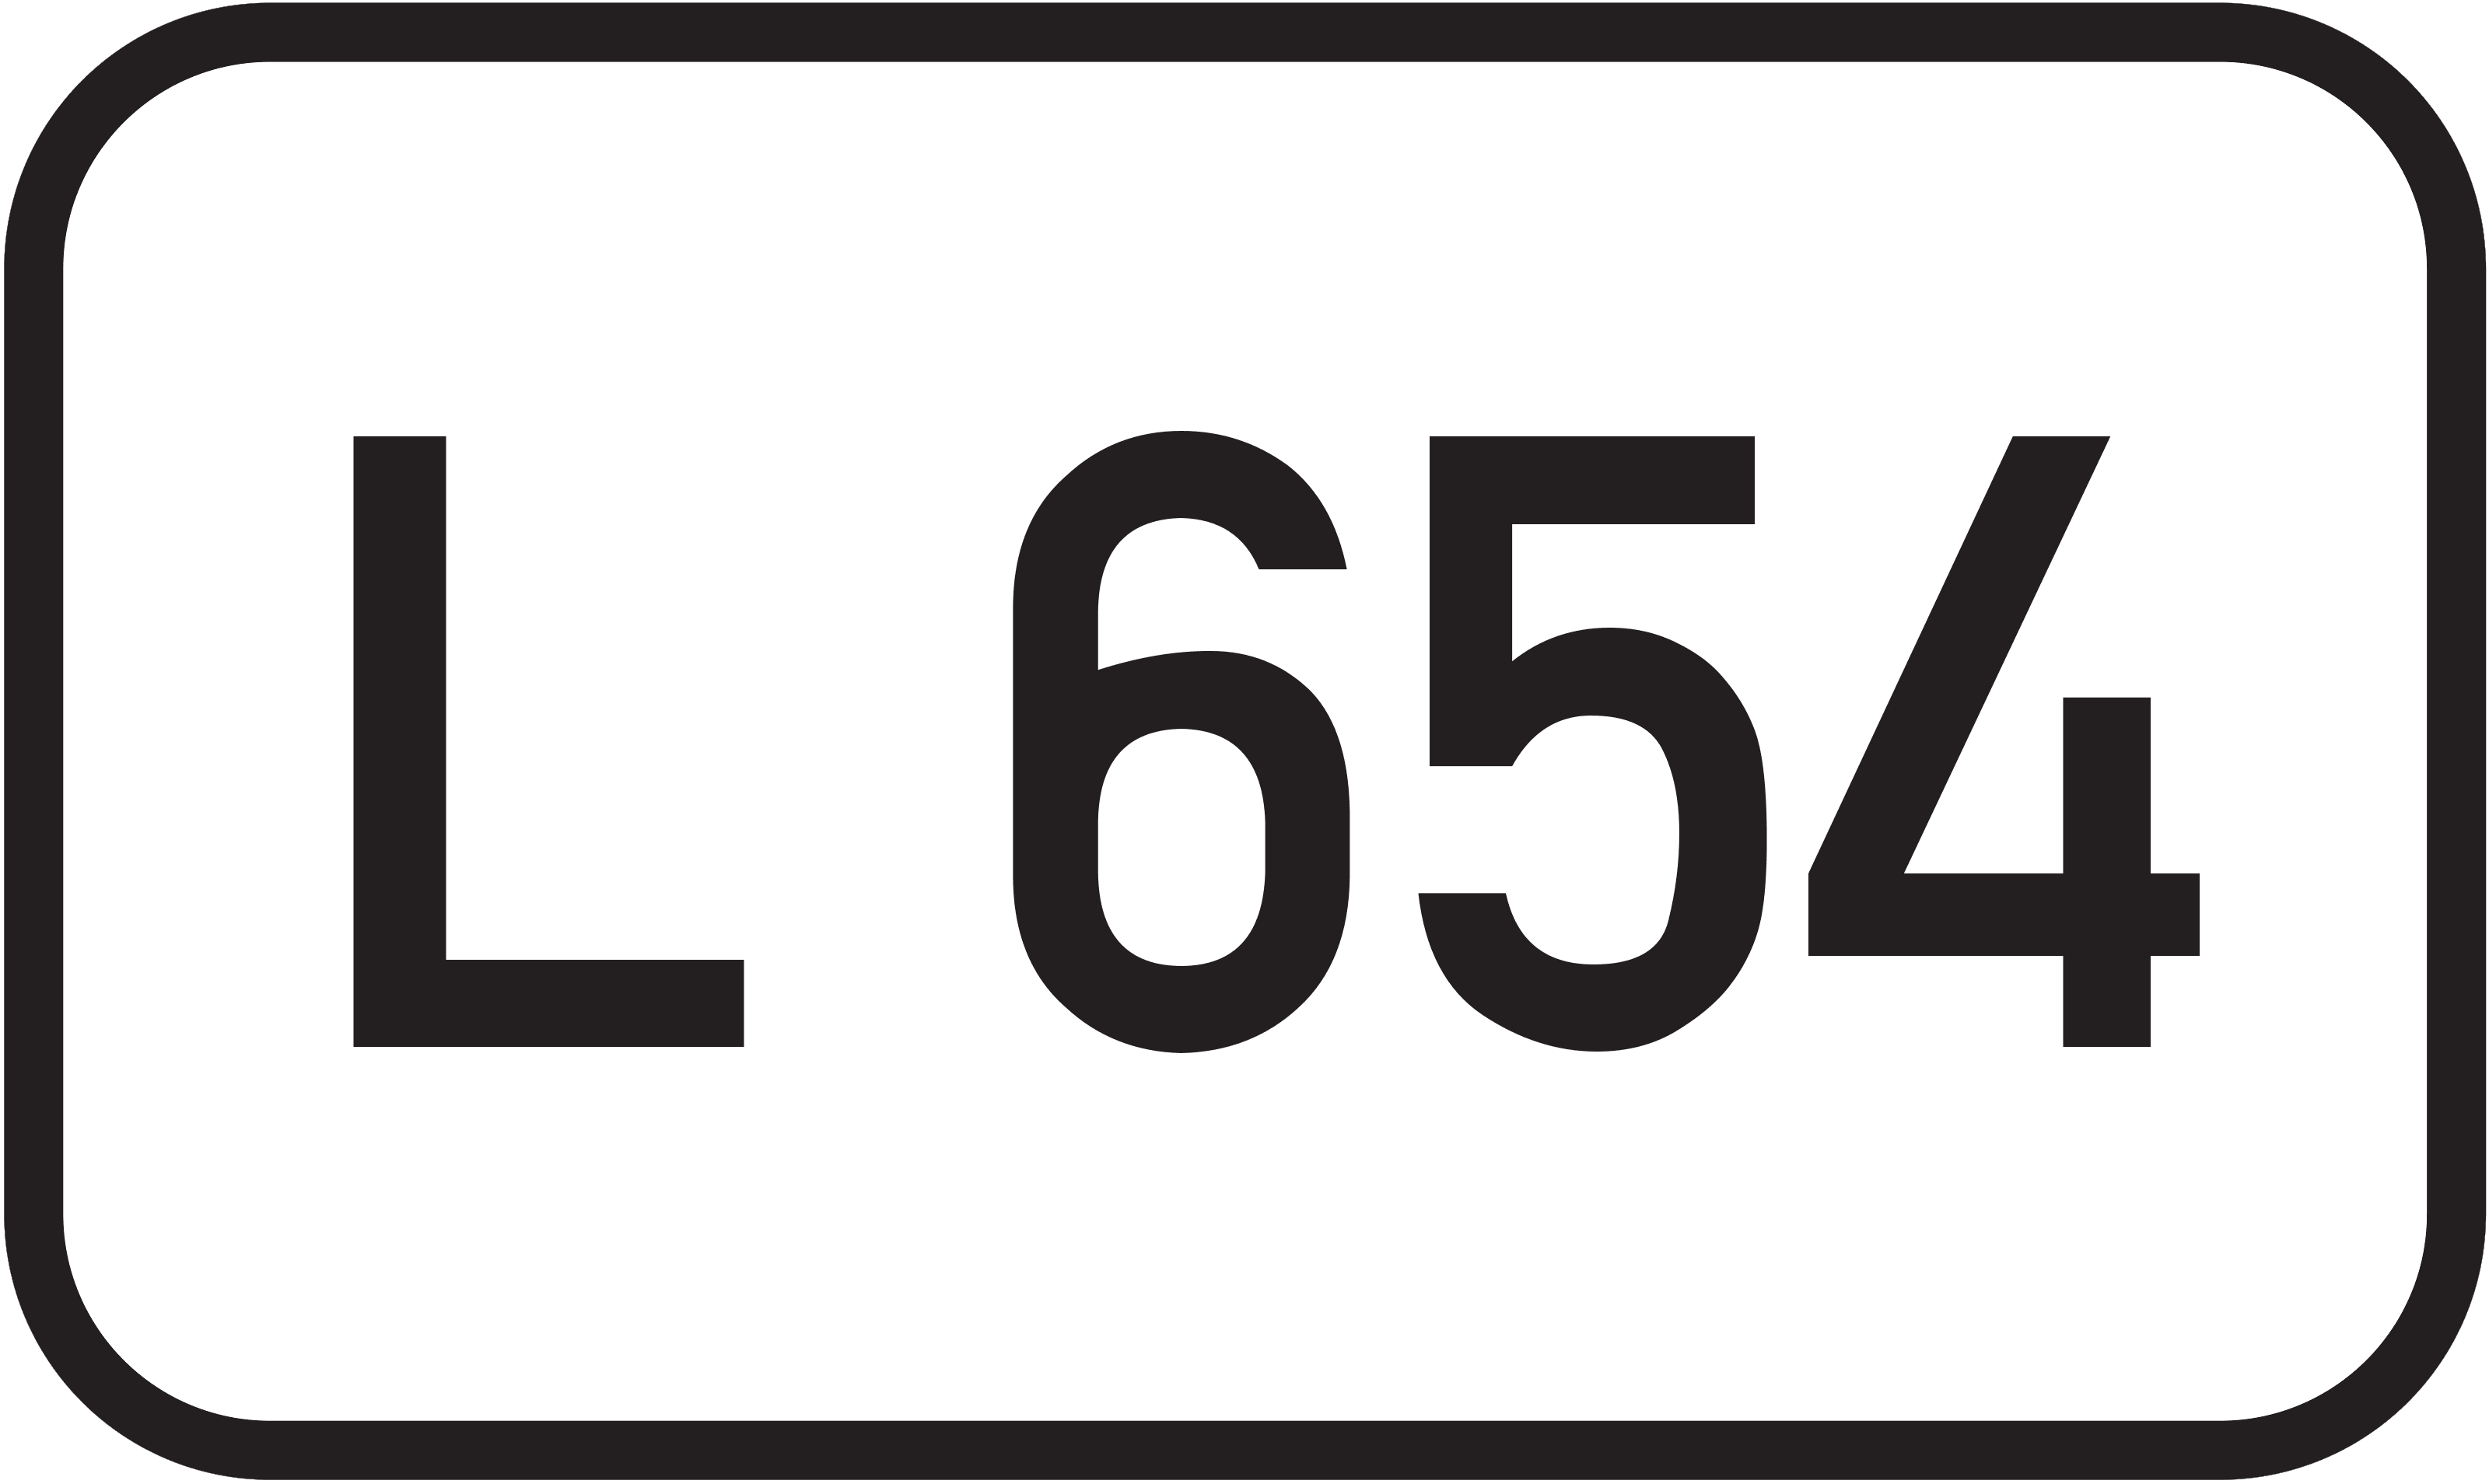 Landesstraße L 654